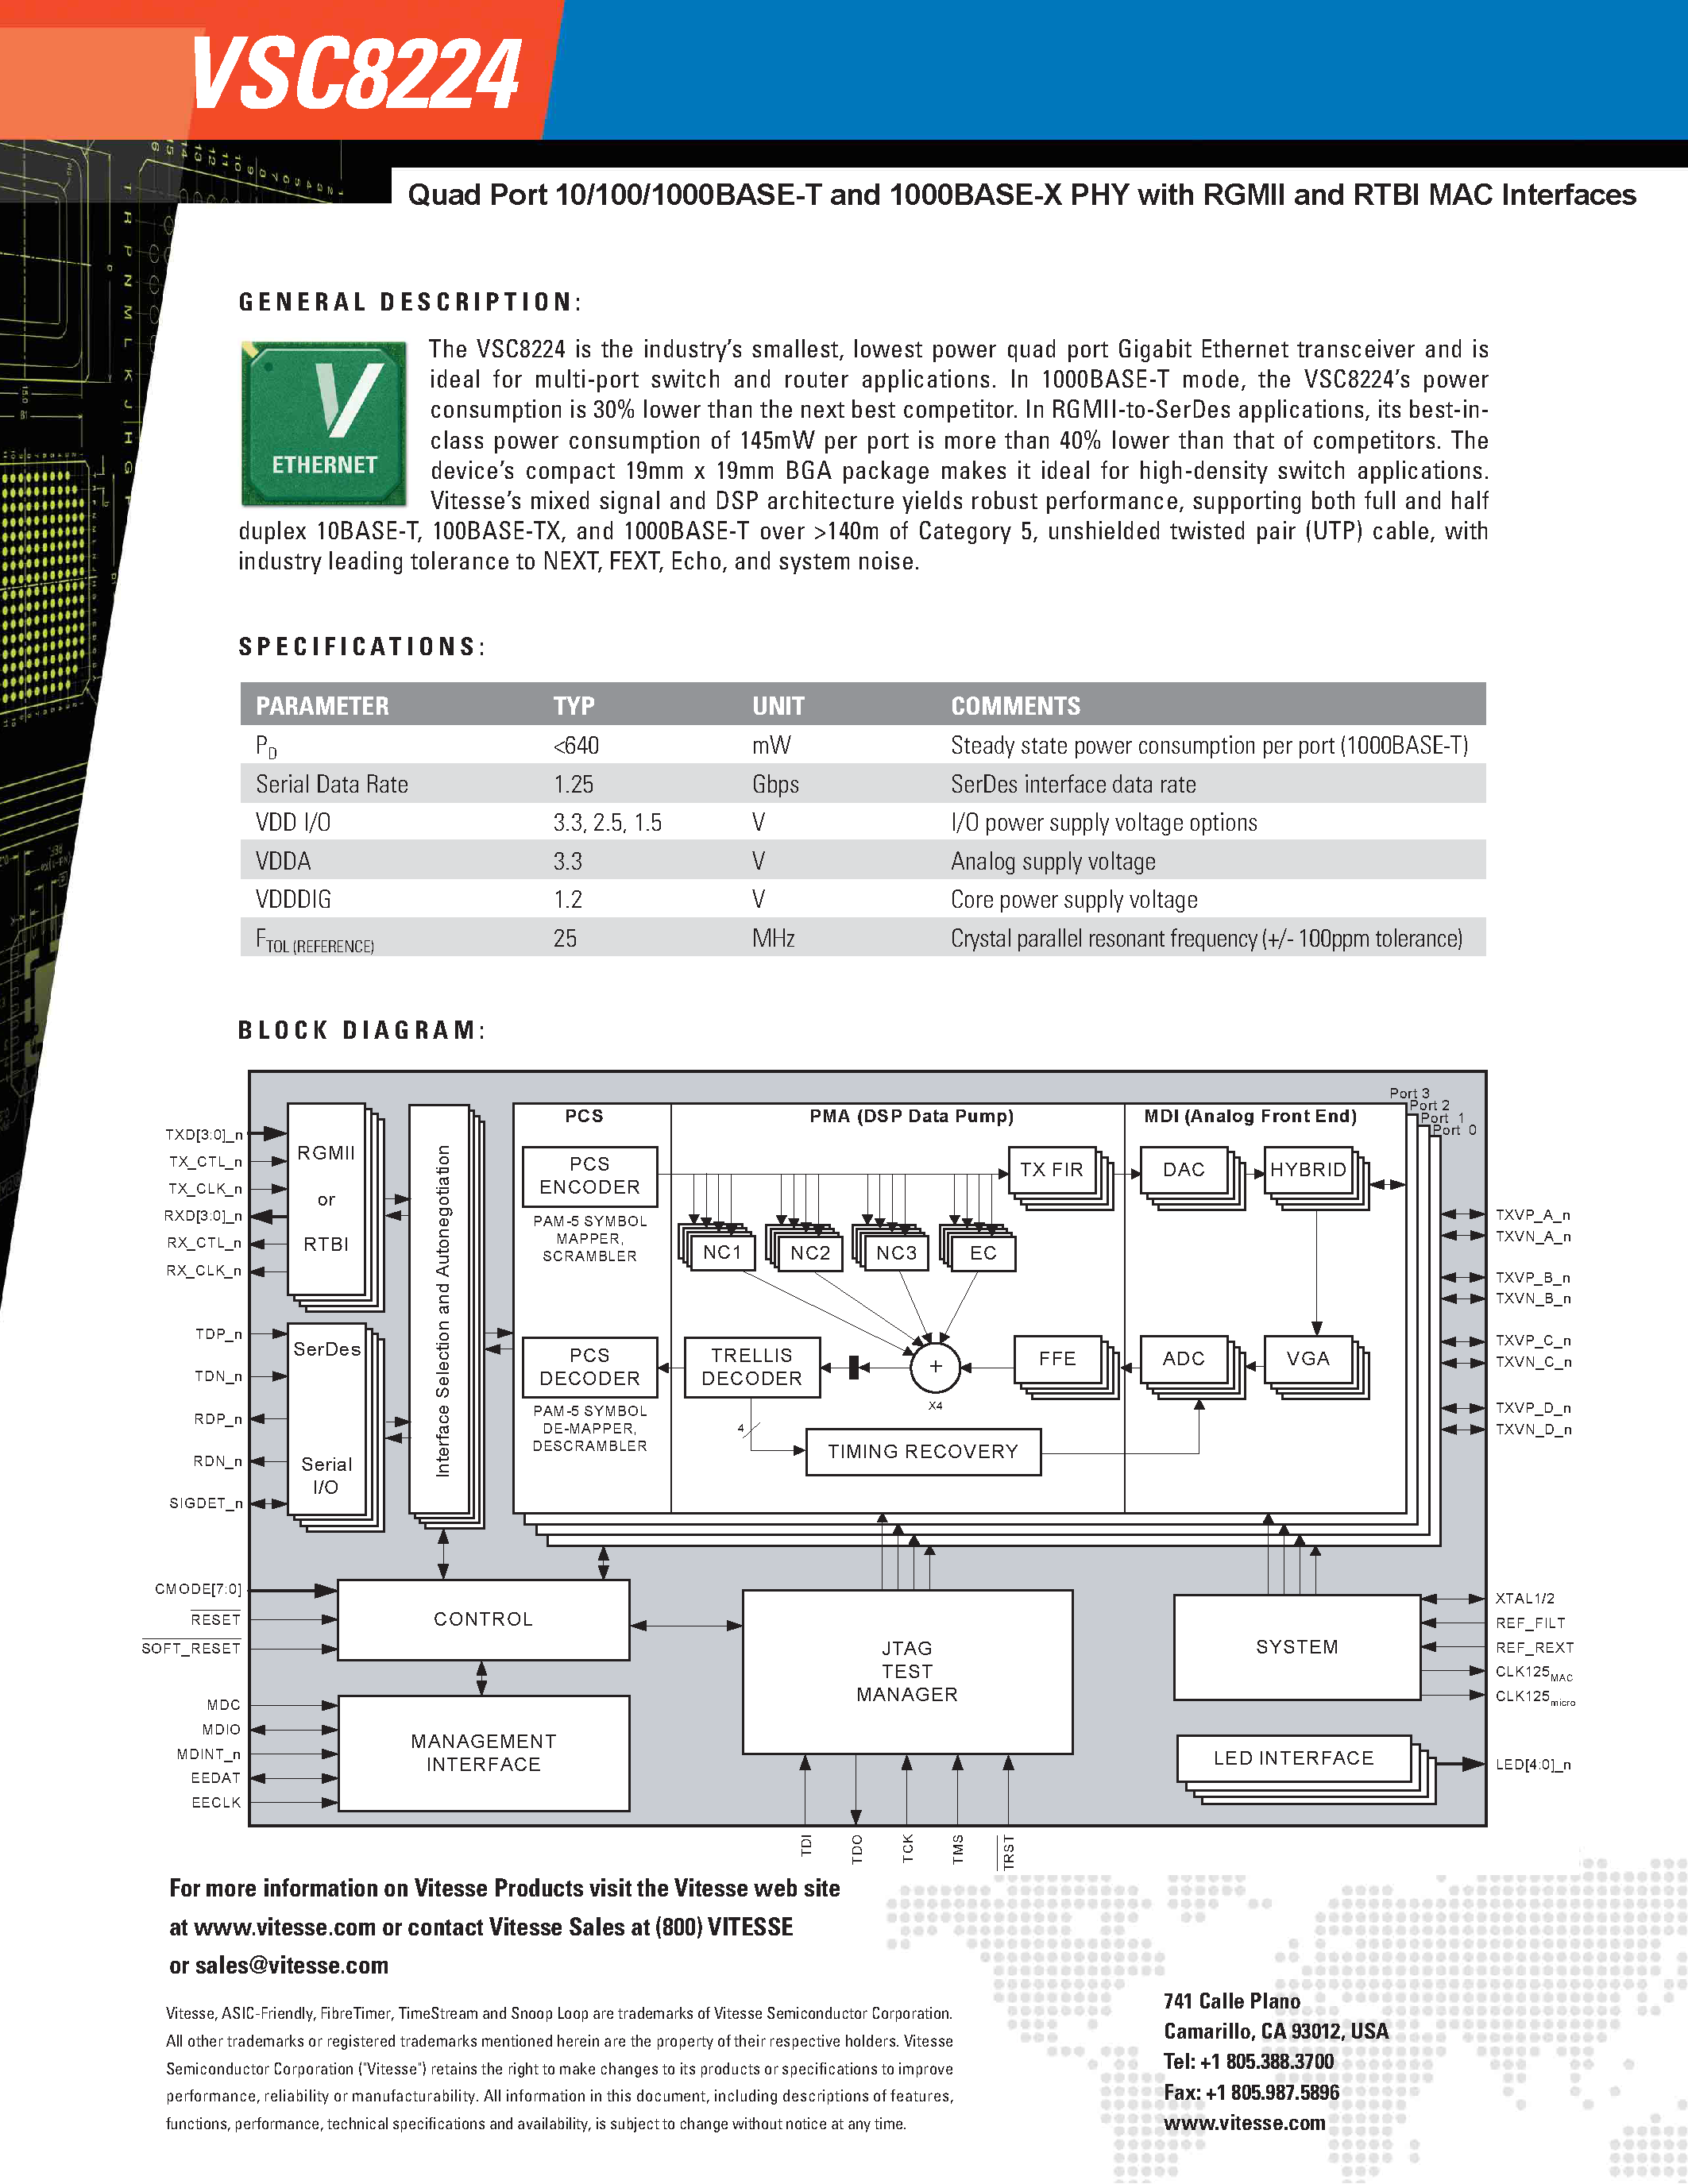 Даташит VSC8224 - Quad Port 10/100/1000 Base-T PHY страница 2